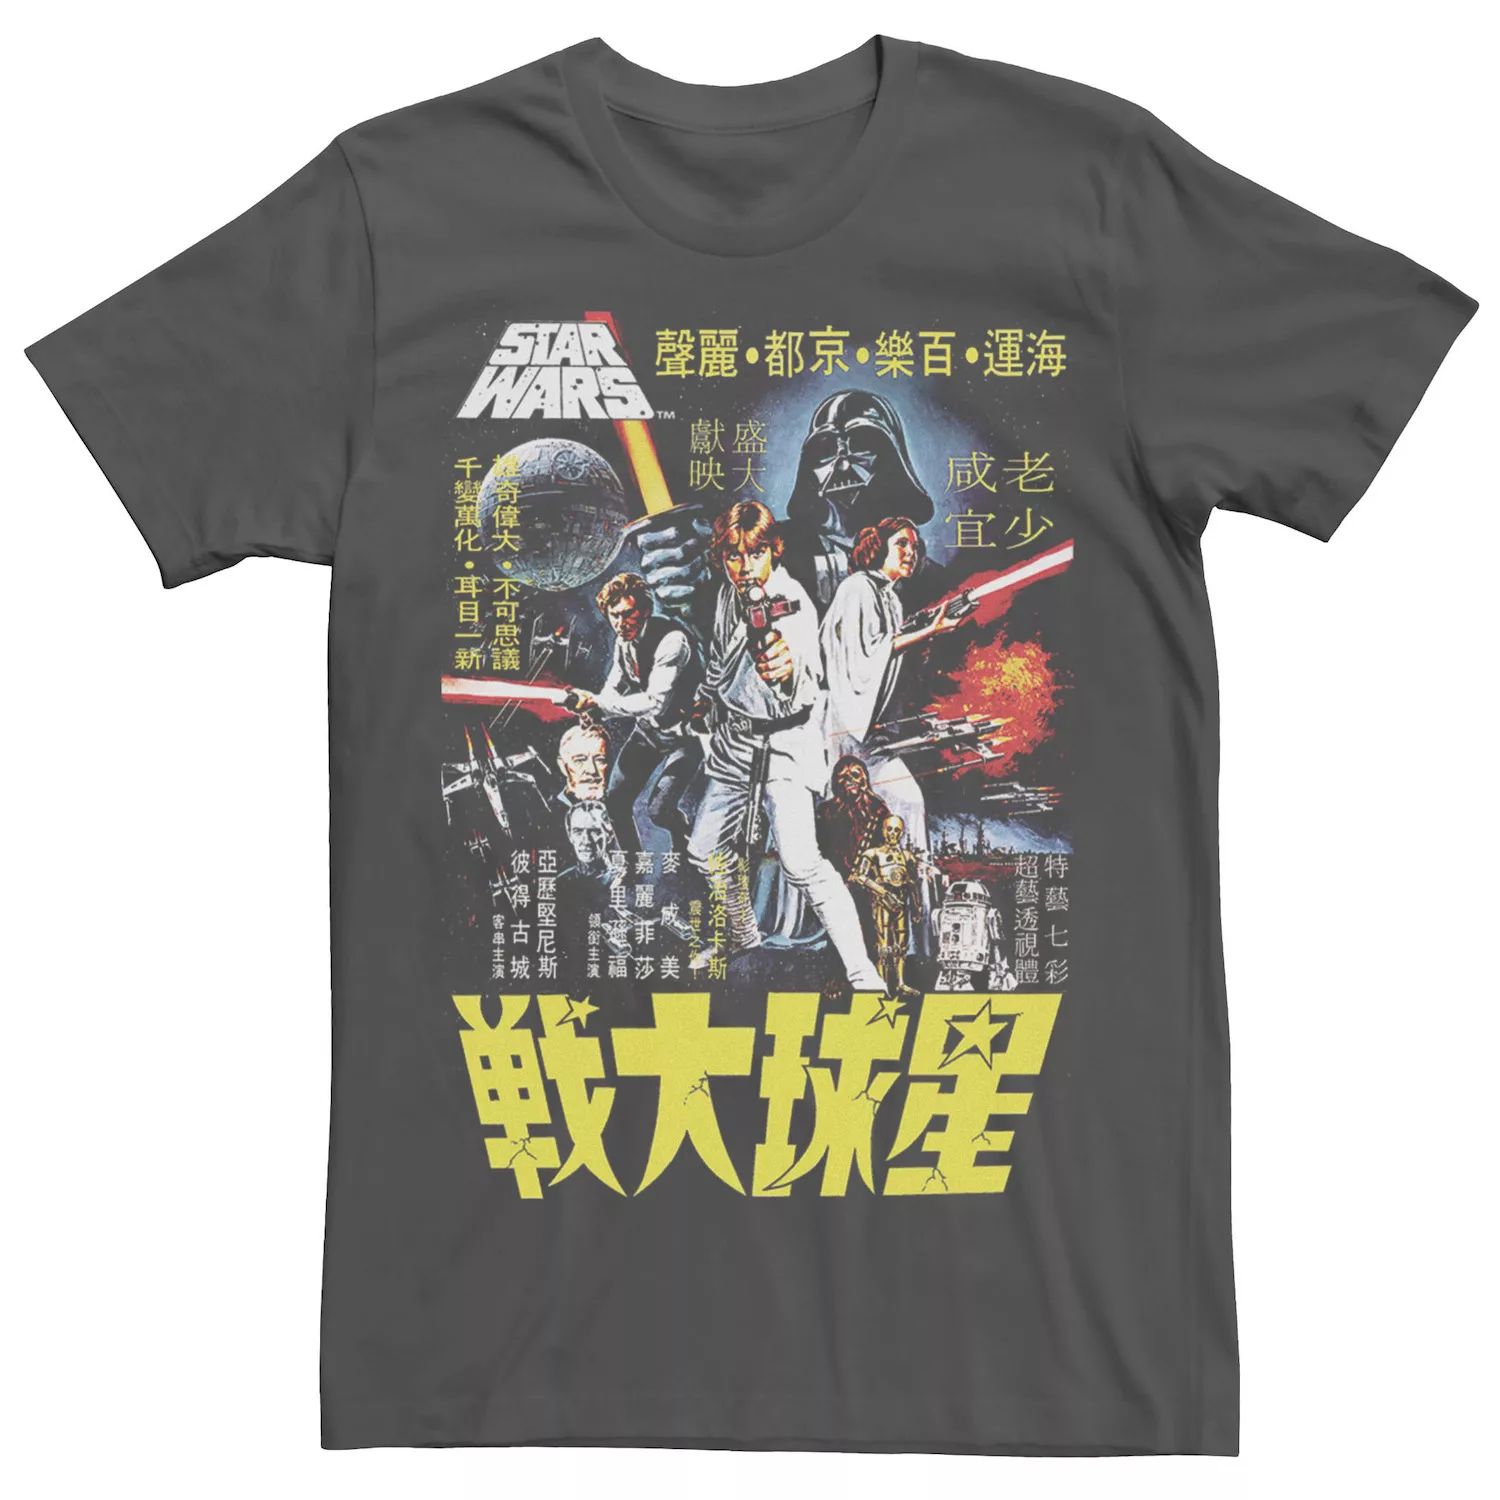 цена Мужская футболка с плакатом «Звездные войны» Licensed Character